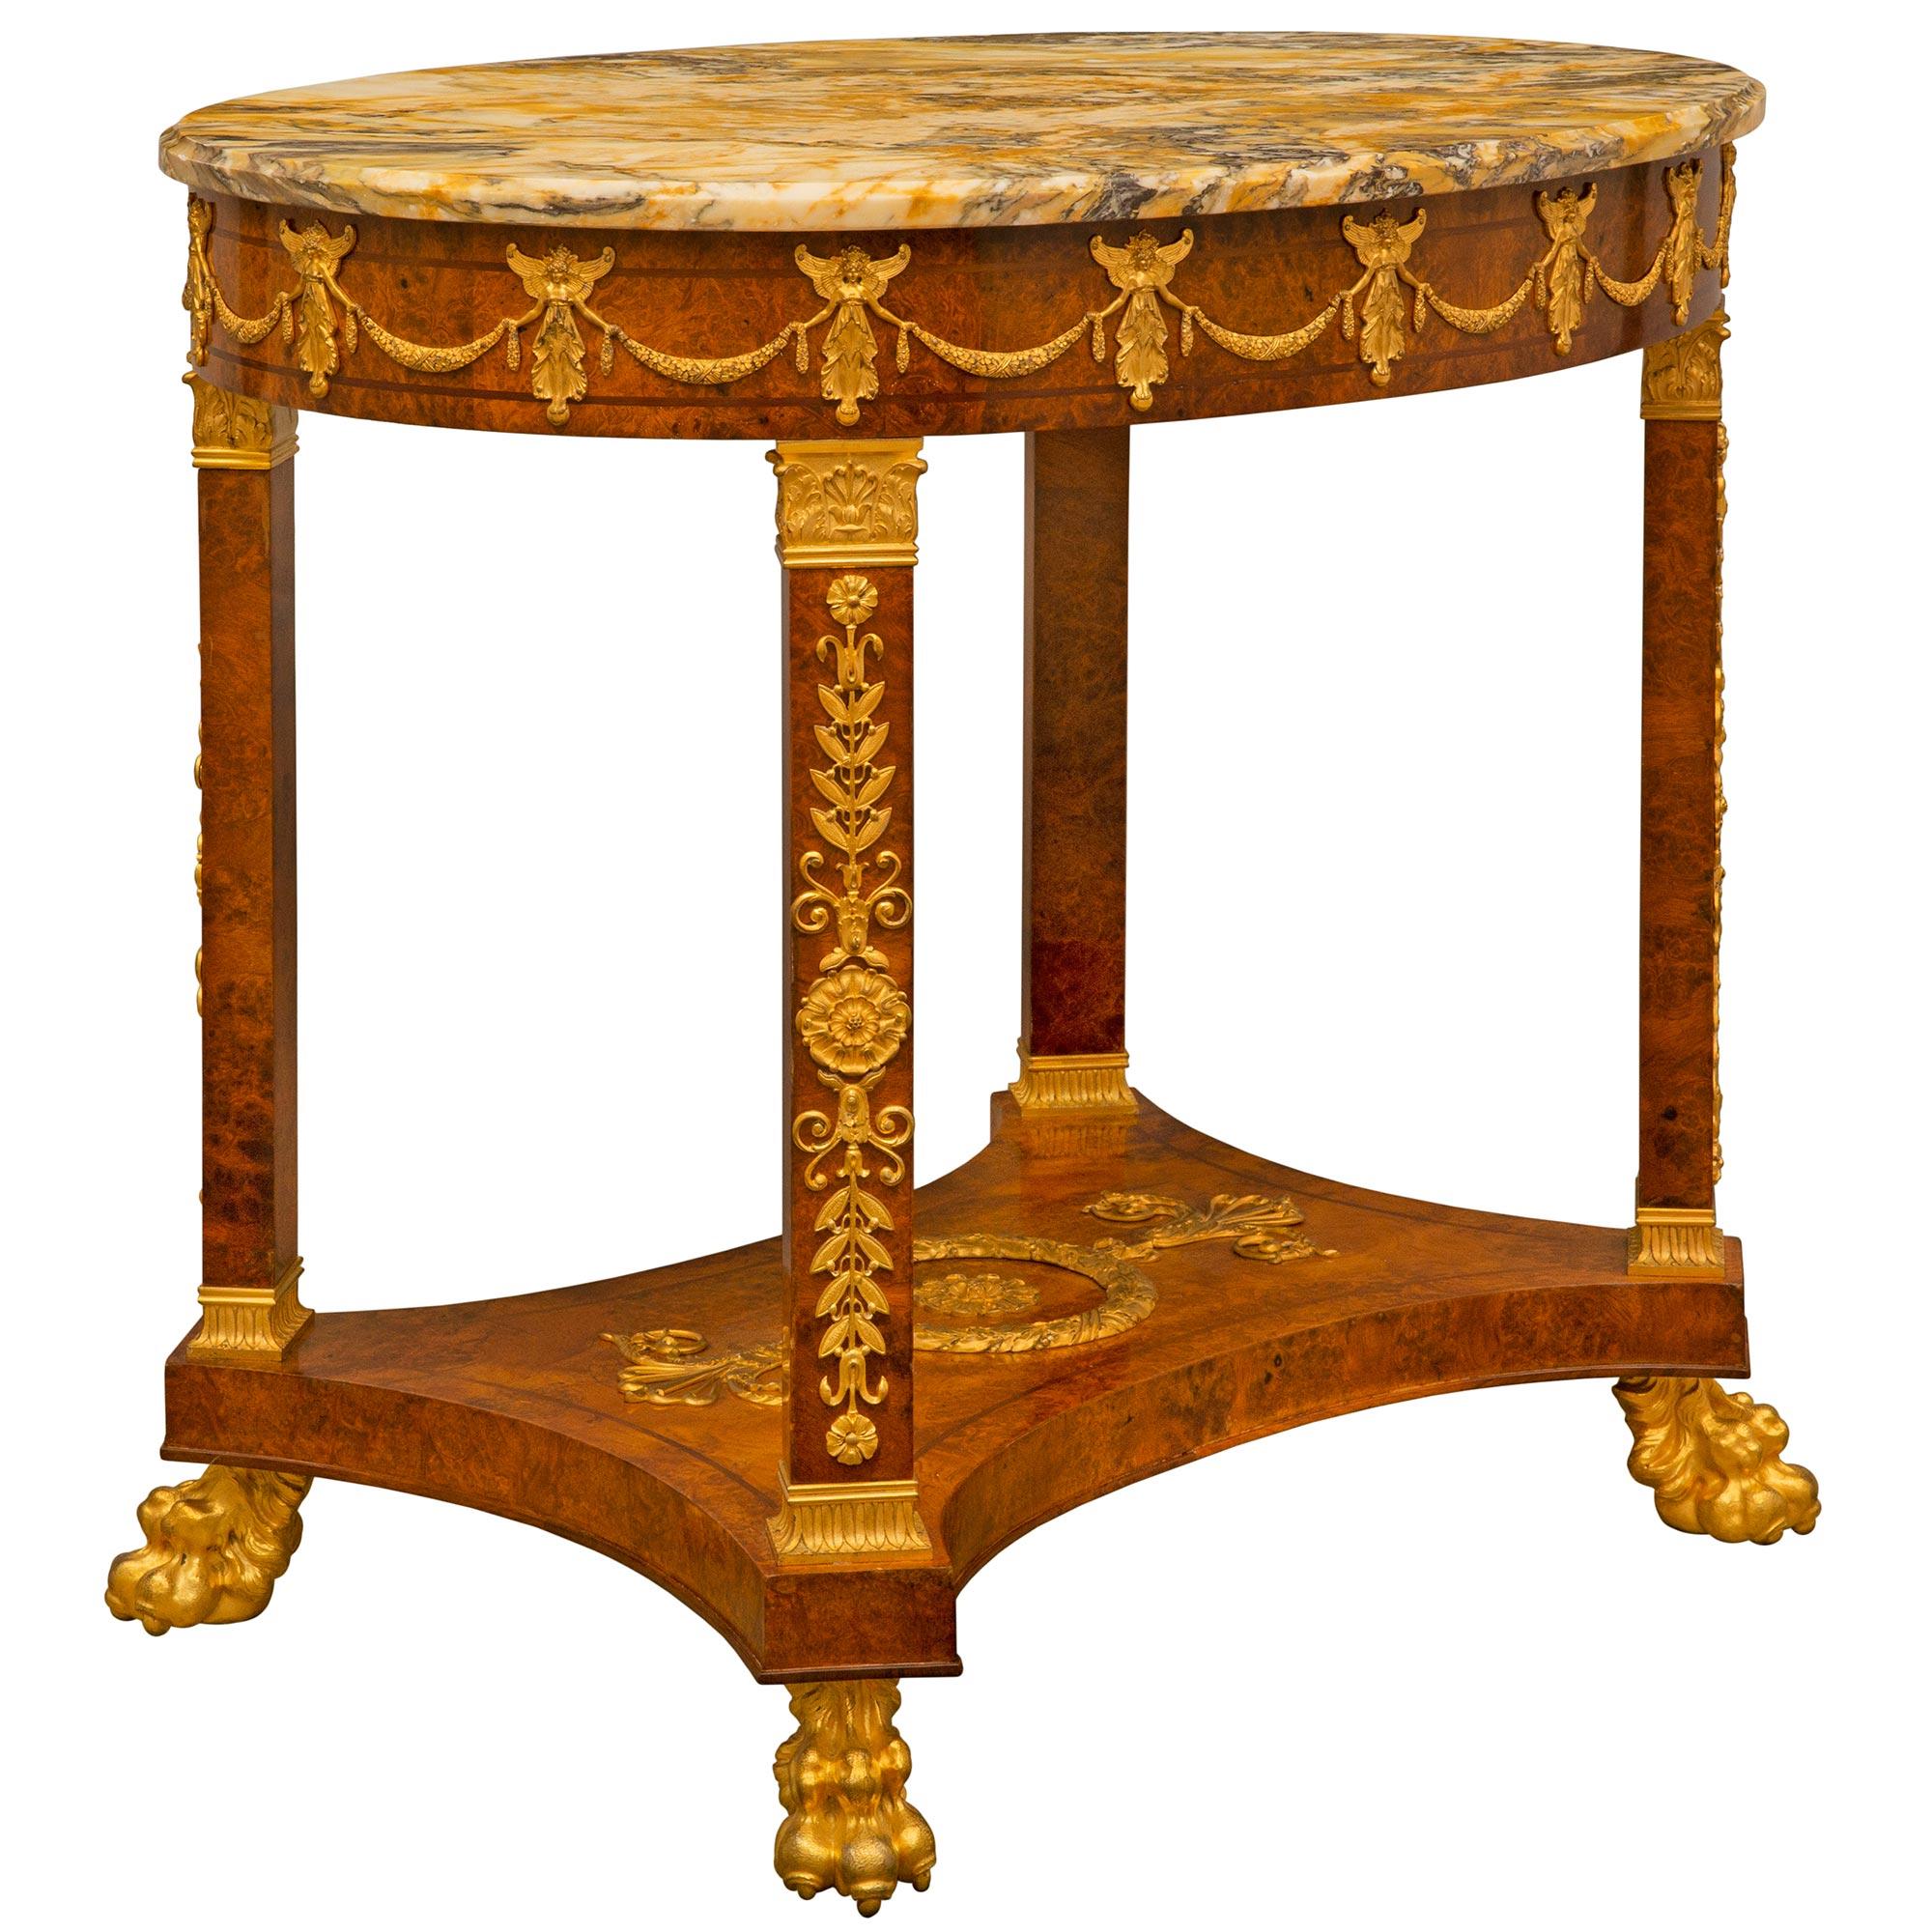 Belle table d'appoint de très grande qualité, datant du 19ème siècle, en noyer ronce Empire, bronze doré et marbre Jaune de Sienne. La table de forme oblongue est surélevée par d'impressionnants pieds à pattes en bronze doré richement ciselé, sous